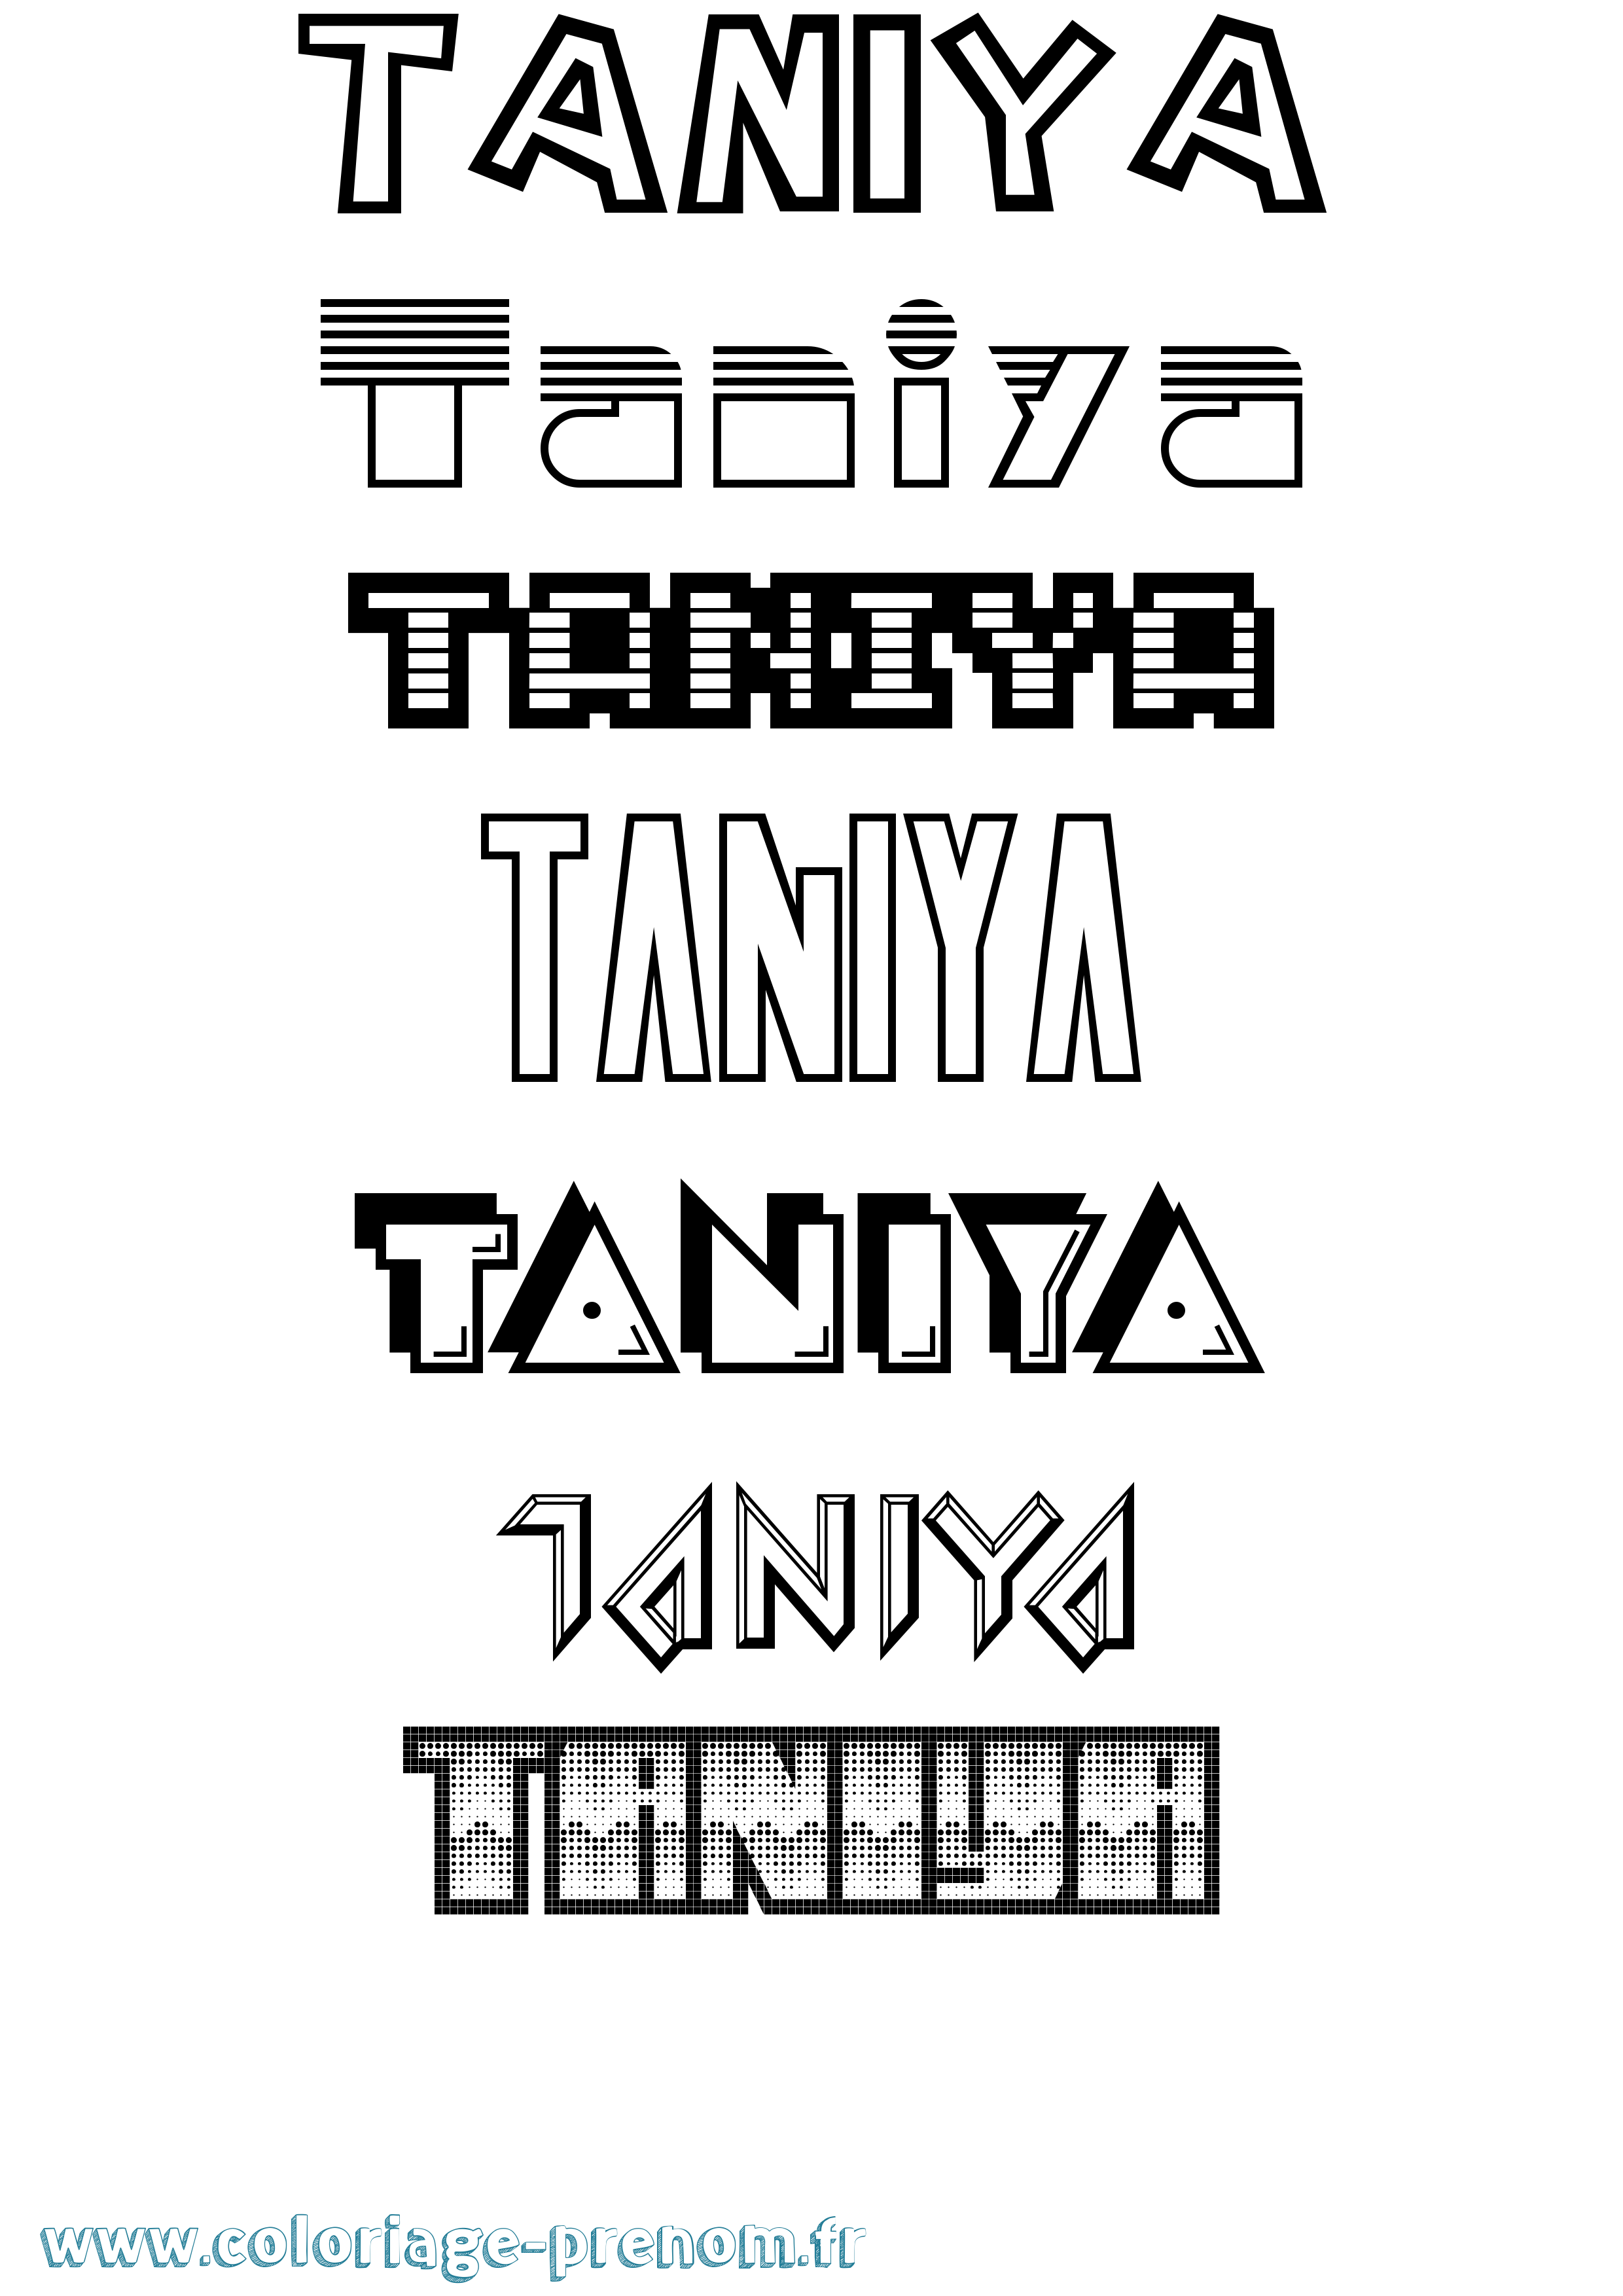 Coloriage prénom Taniya Jeux Vidéos